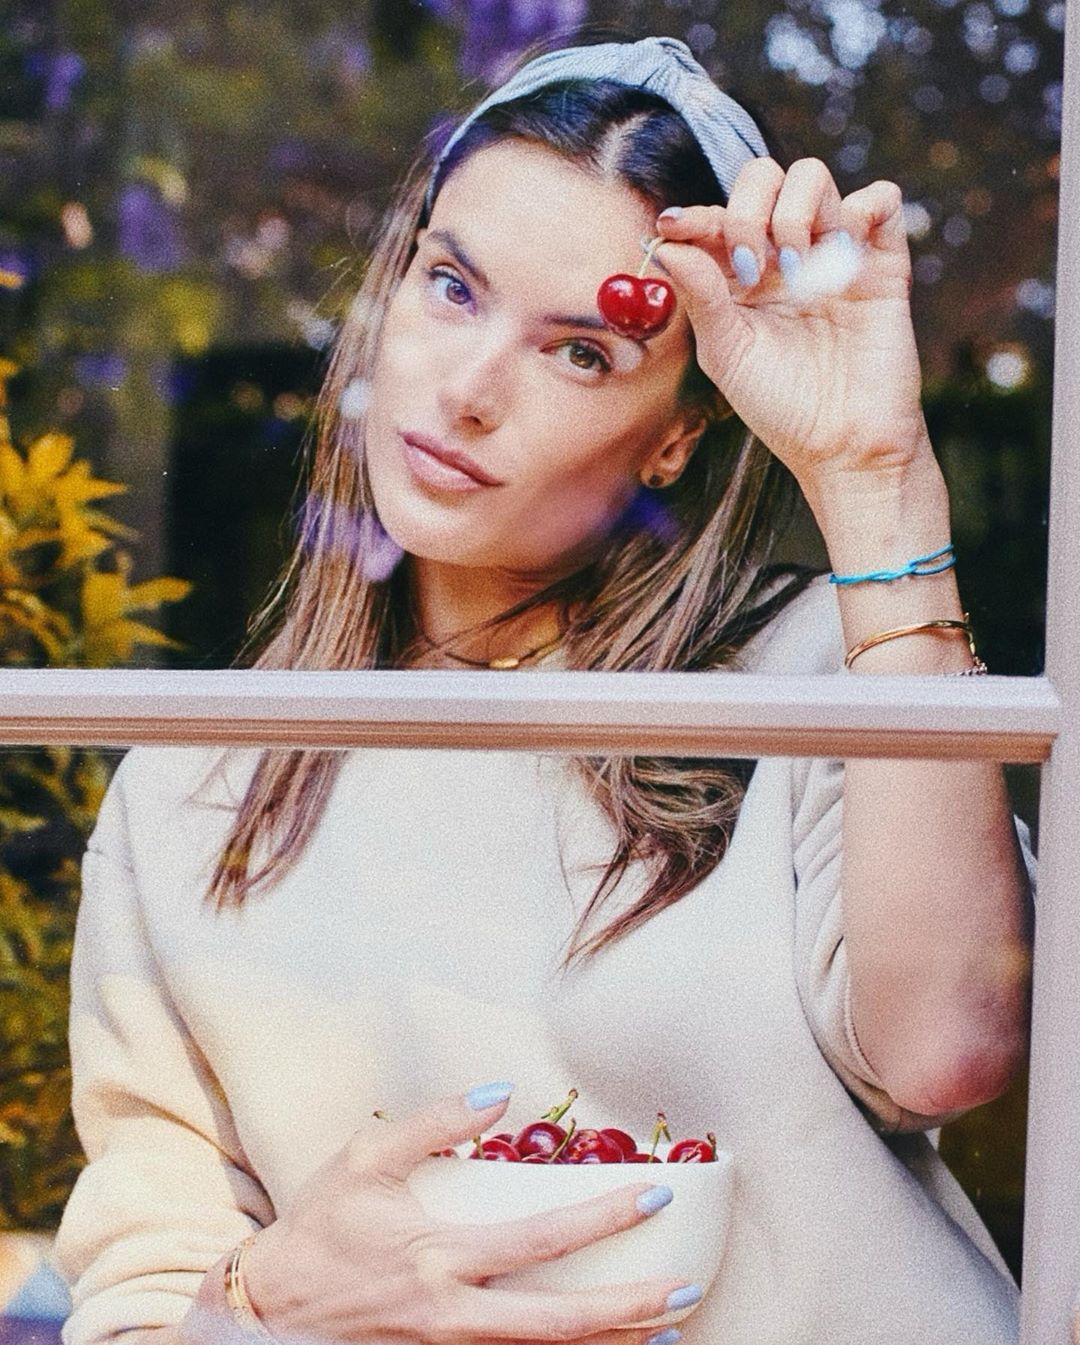 Fotos n°3 : Alessandra Ambrosio Comiendo Cerezas en sus bragas!